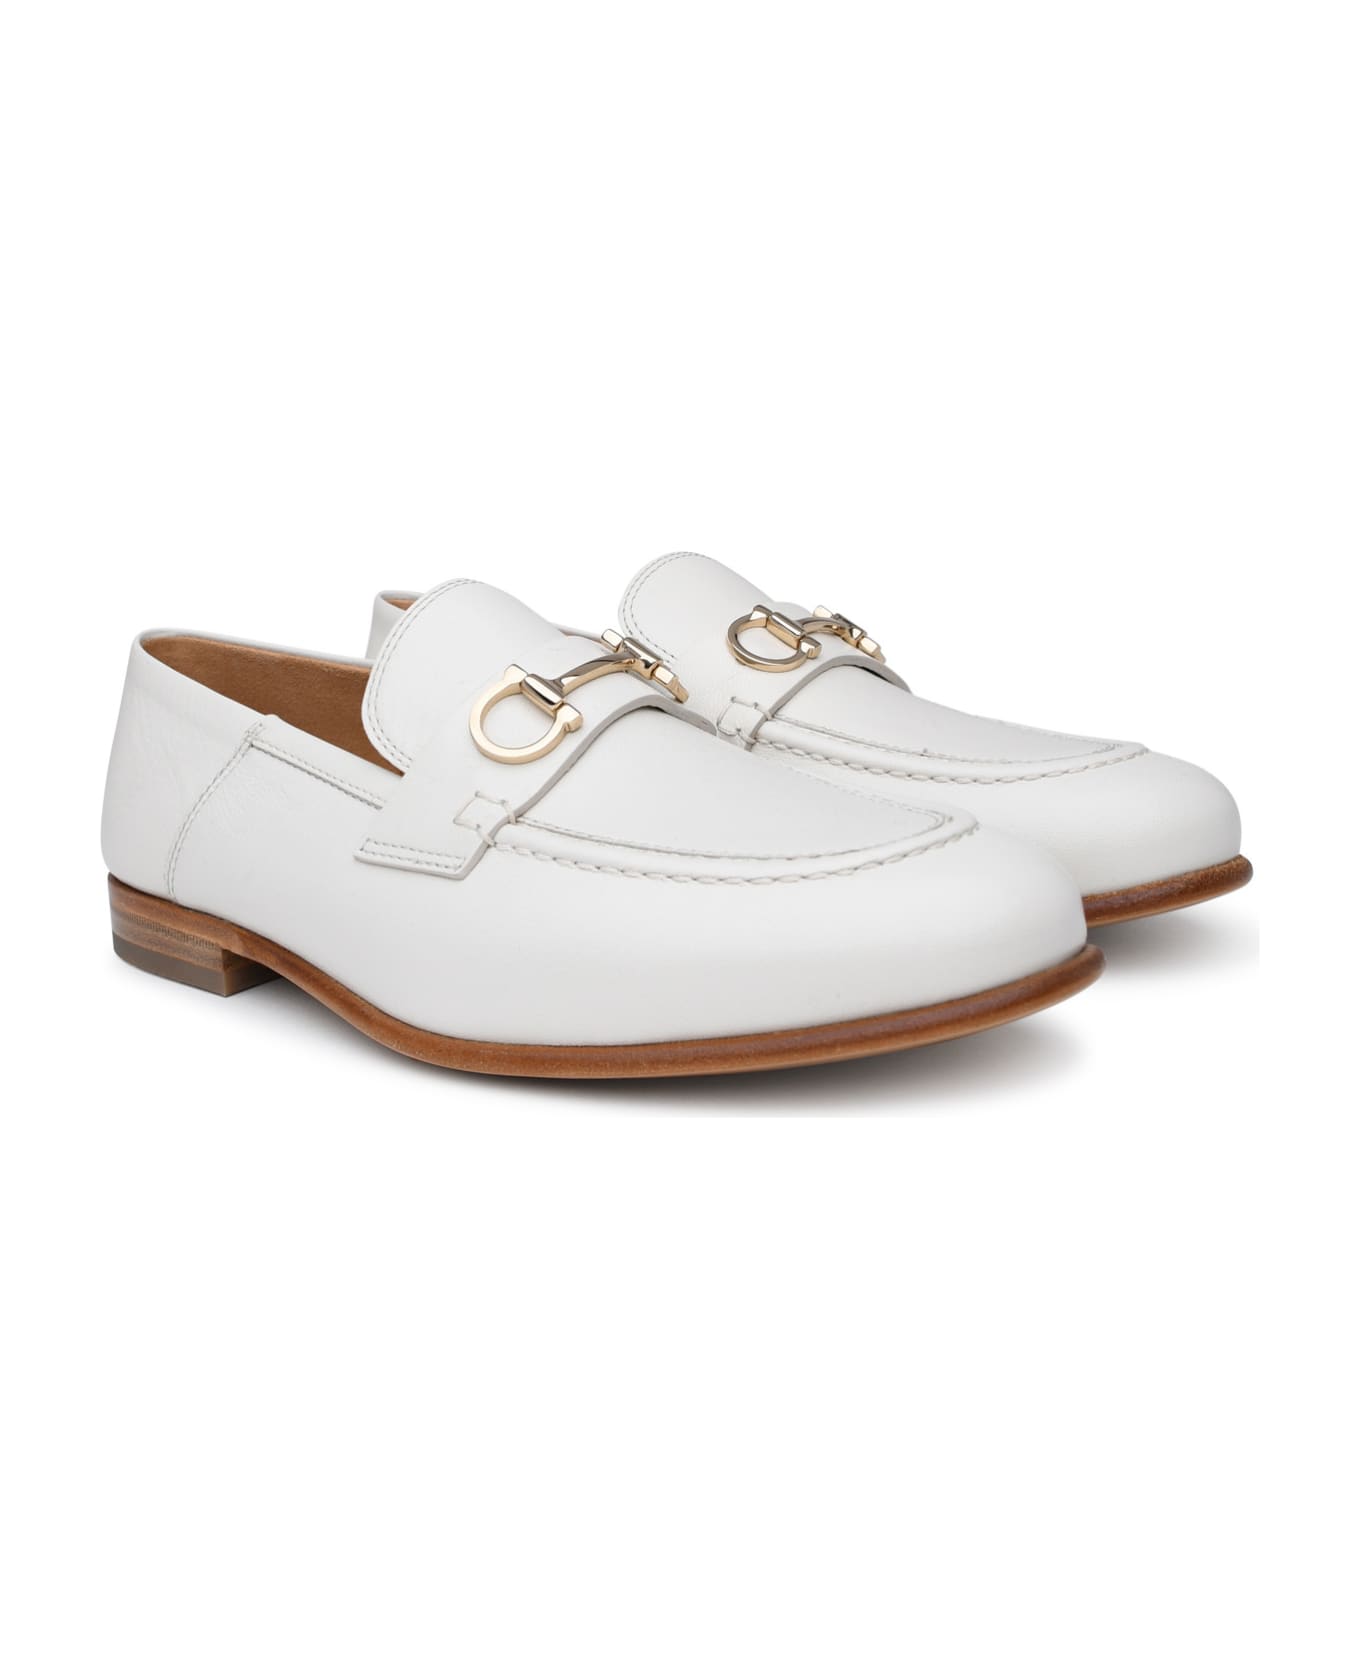 Ferragamo White Leather Loafers - Cream